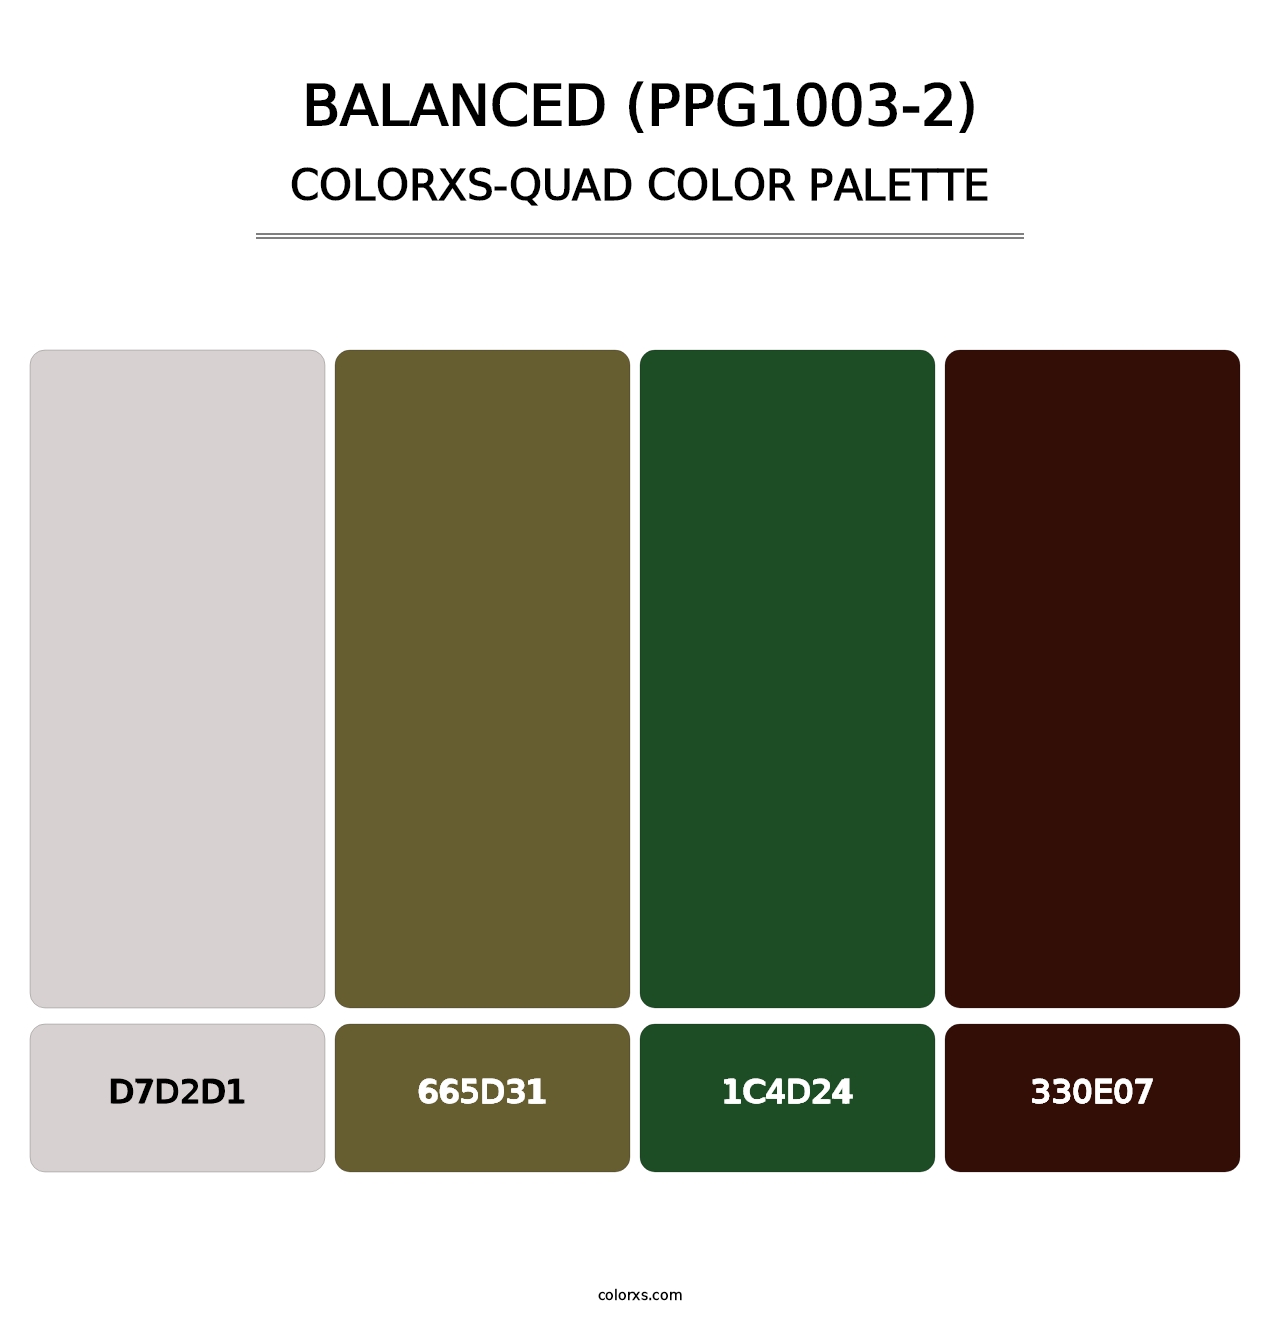 Balanced (PPG1003-2) - Colorxs Quad Palette